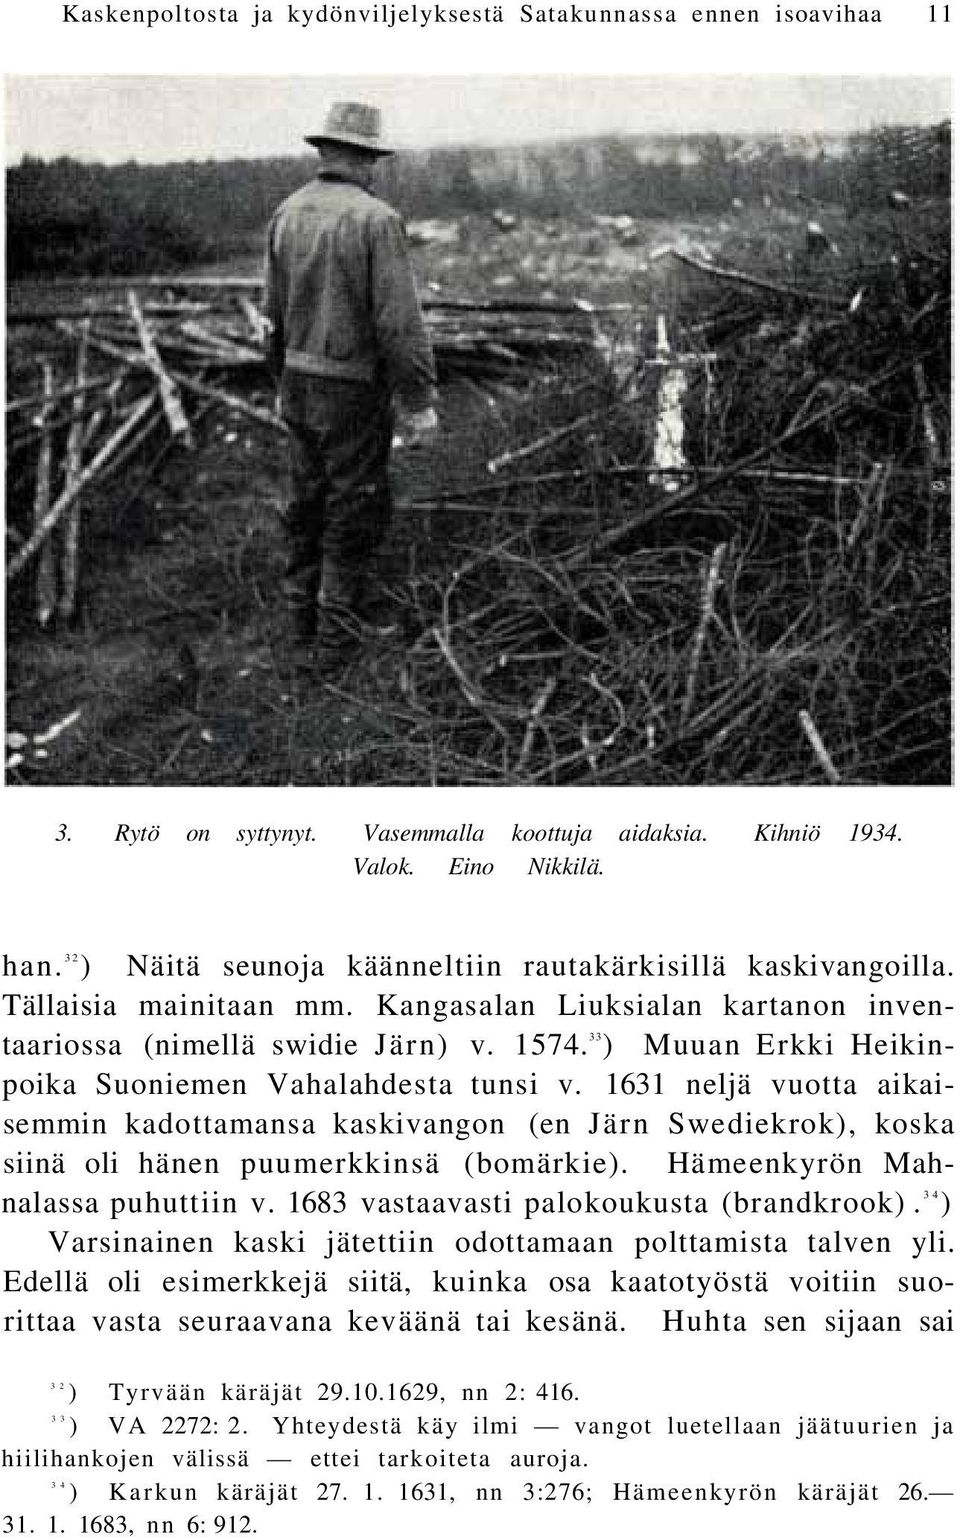 33 ) Muuan Erkki Heikinpoika Suoniemen Vahalahdesta tunsi v. 1631 neljä vuotta aikaisemmin kadottamansa kaskivangon (en Järn Swediekrok), koska siinä oli hänen puumerkkinsä (bomärkie).